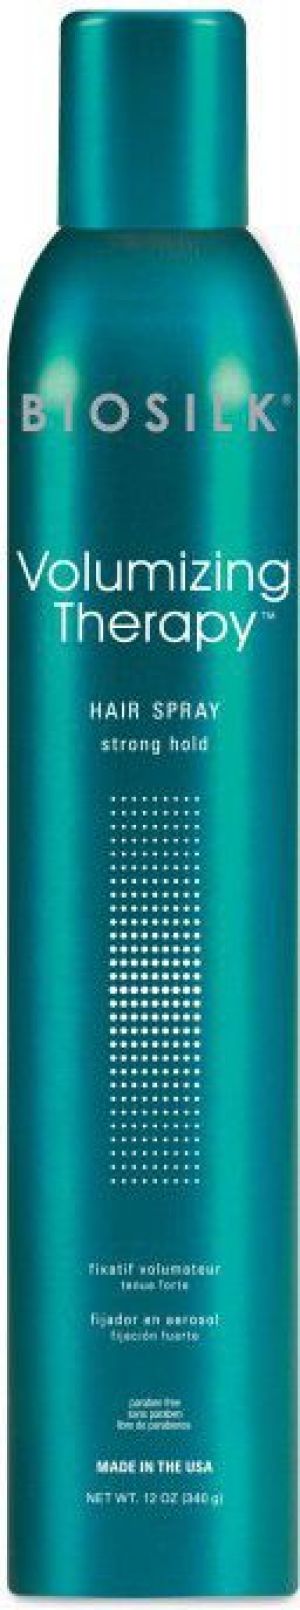 Farouk Systems Biosilk Volumizing Therapy Hair Spray Silny lakier do włosów nadający objętości 304g 1